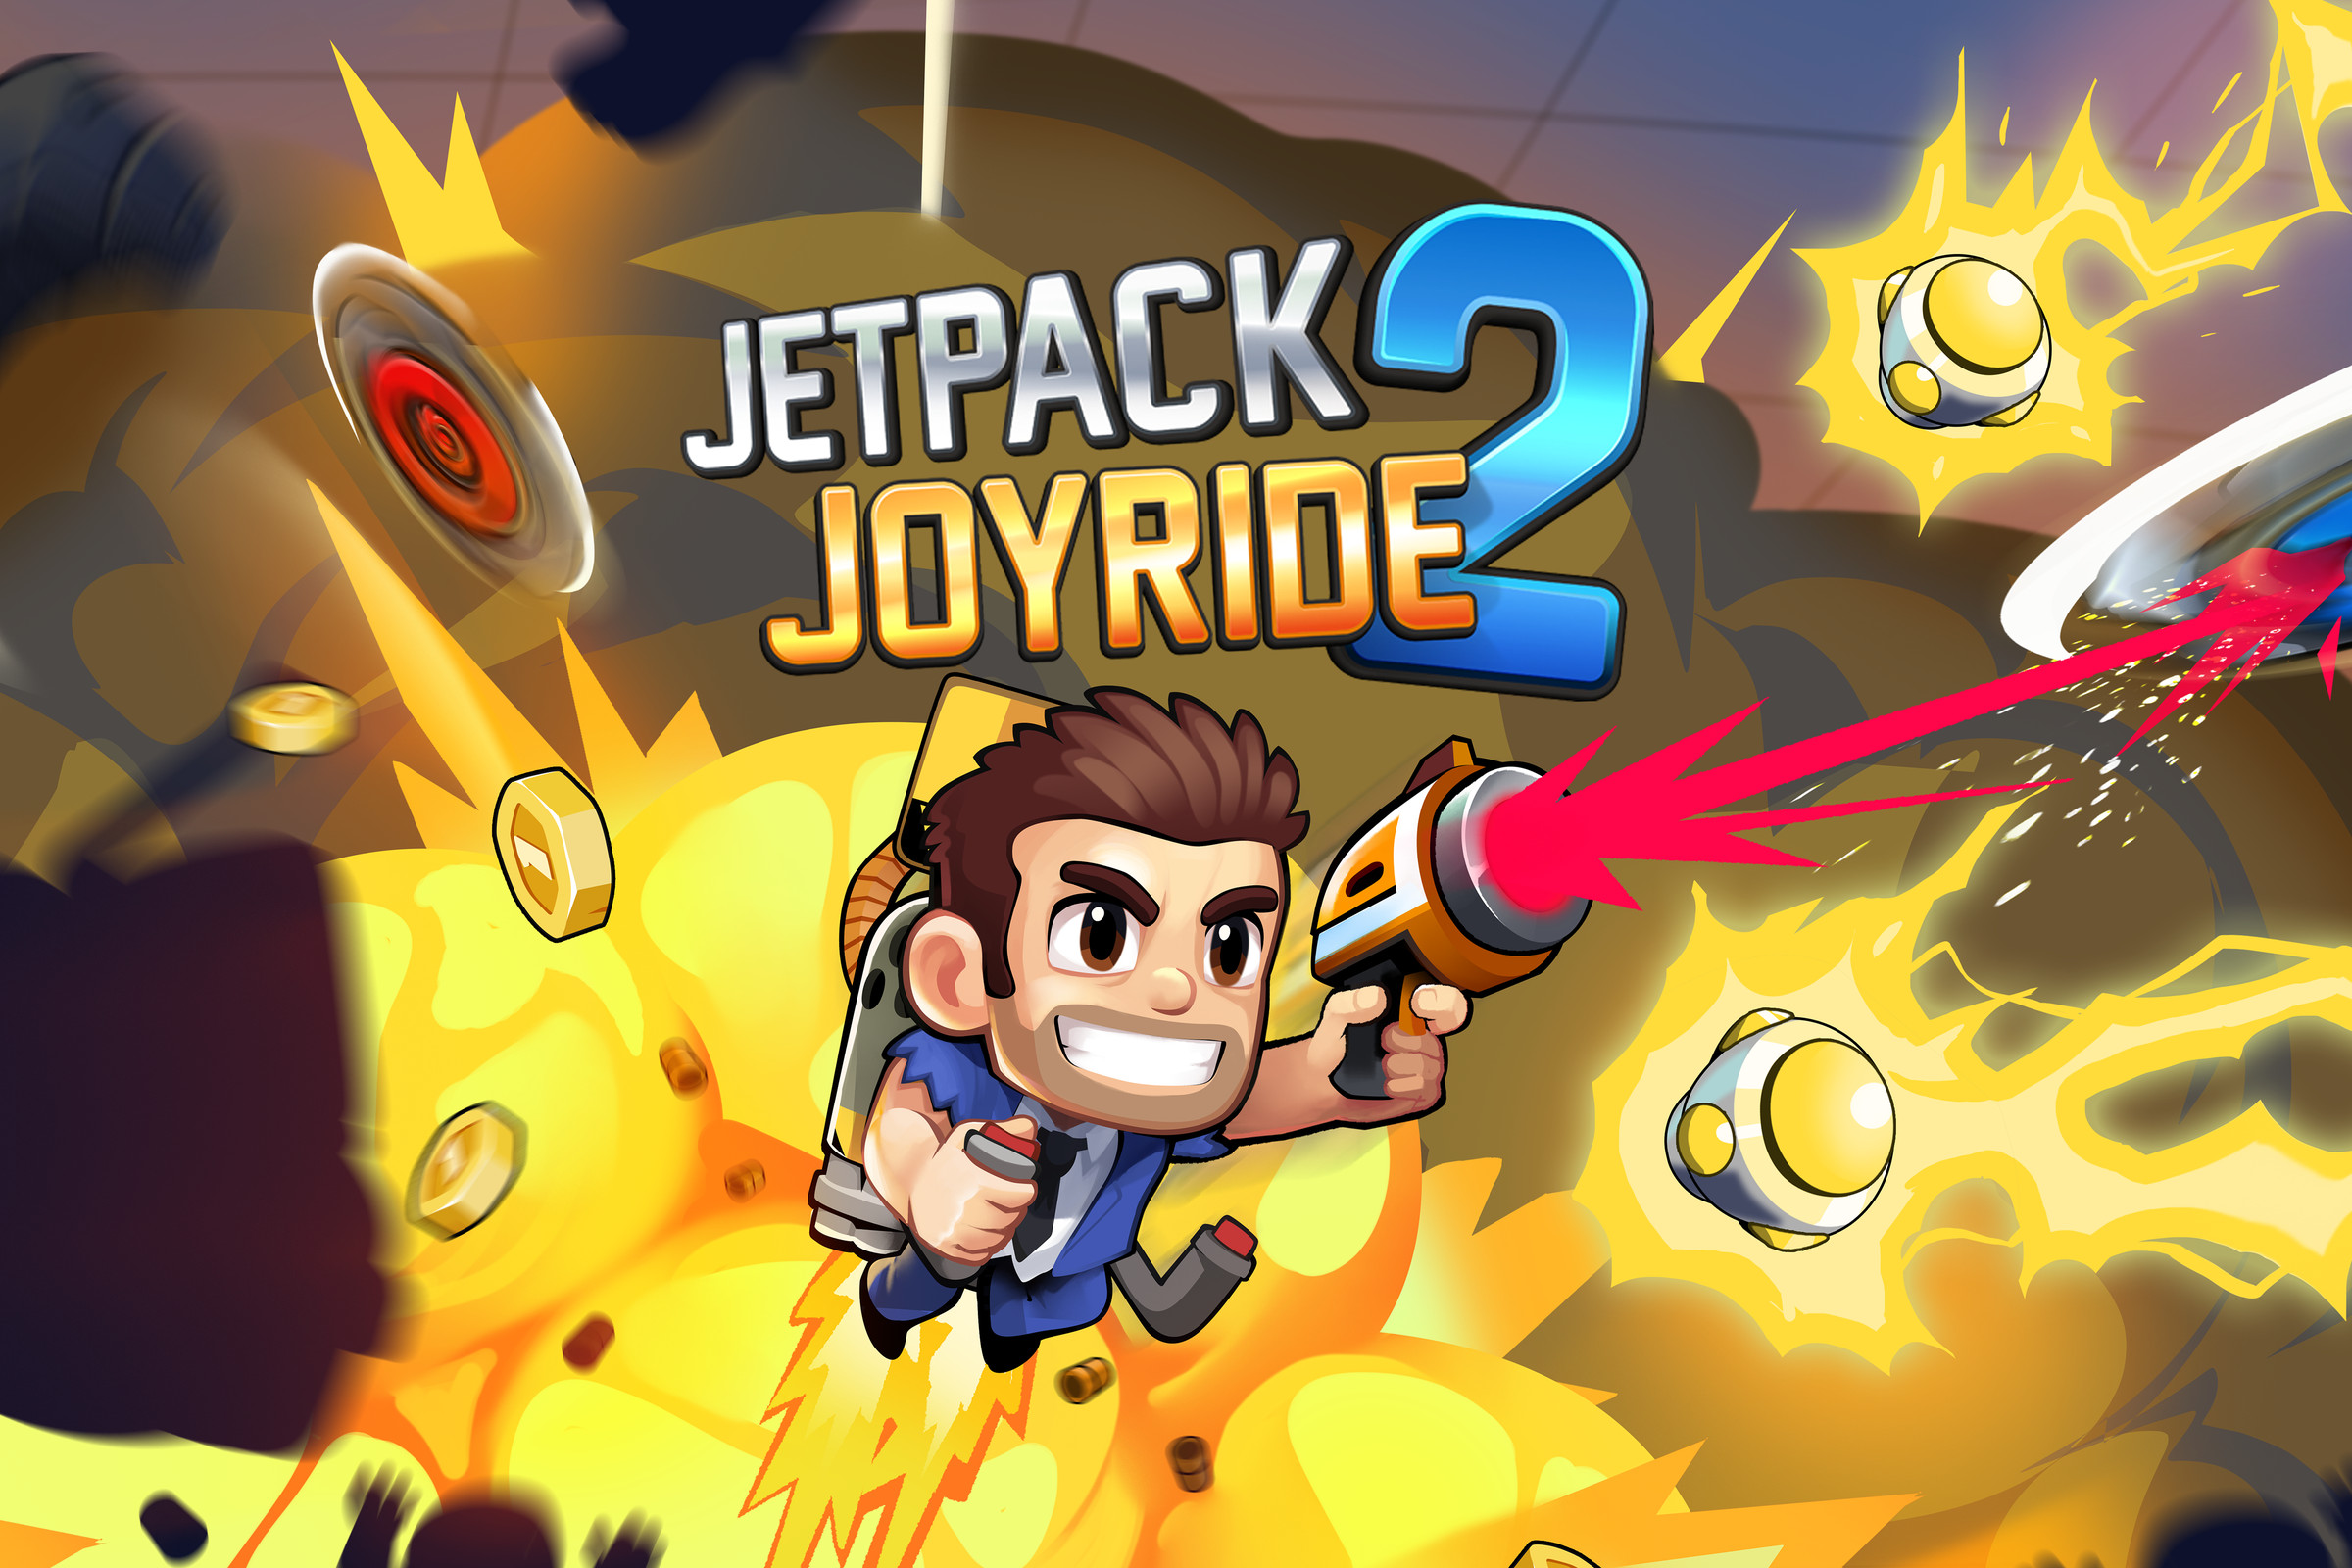 Art for Jetpack Joyride 2